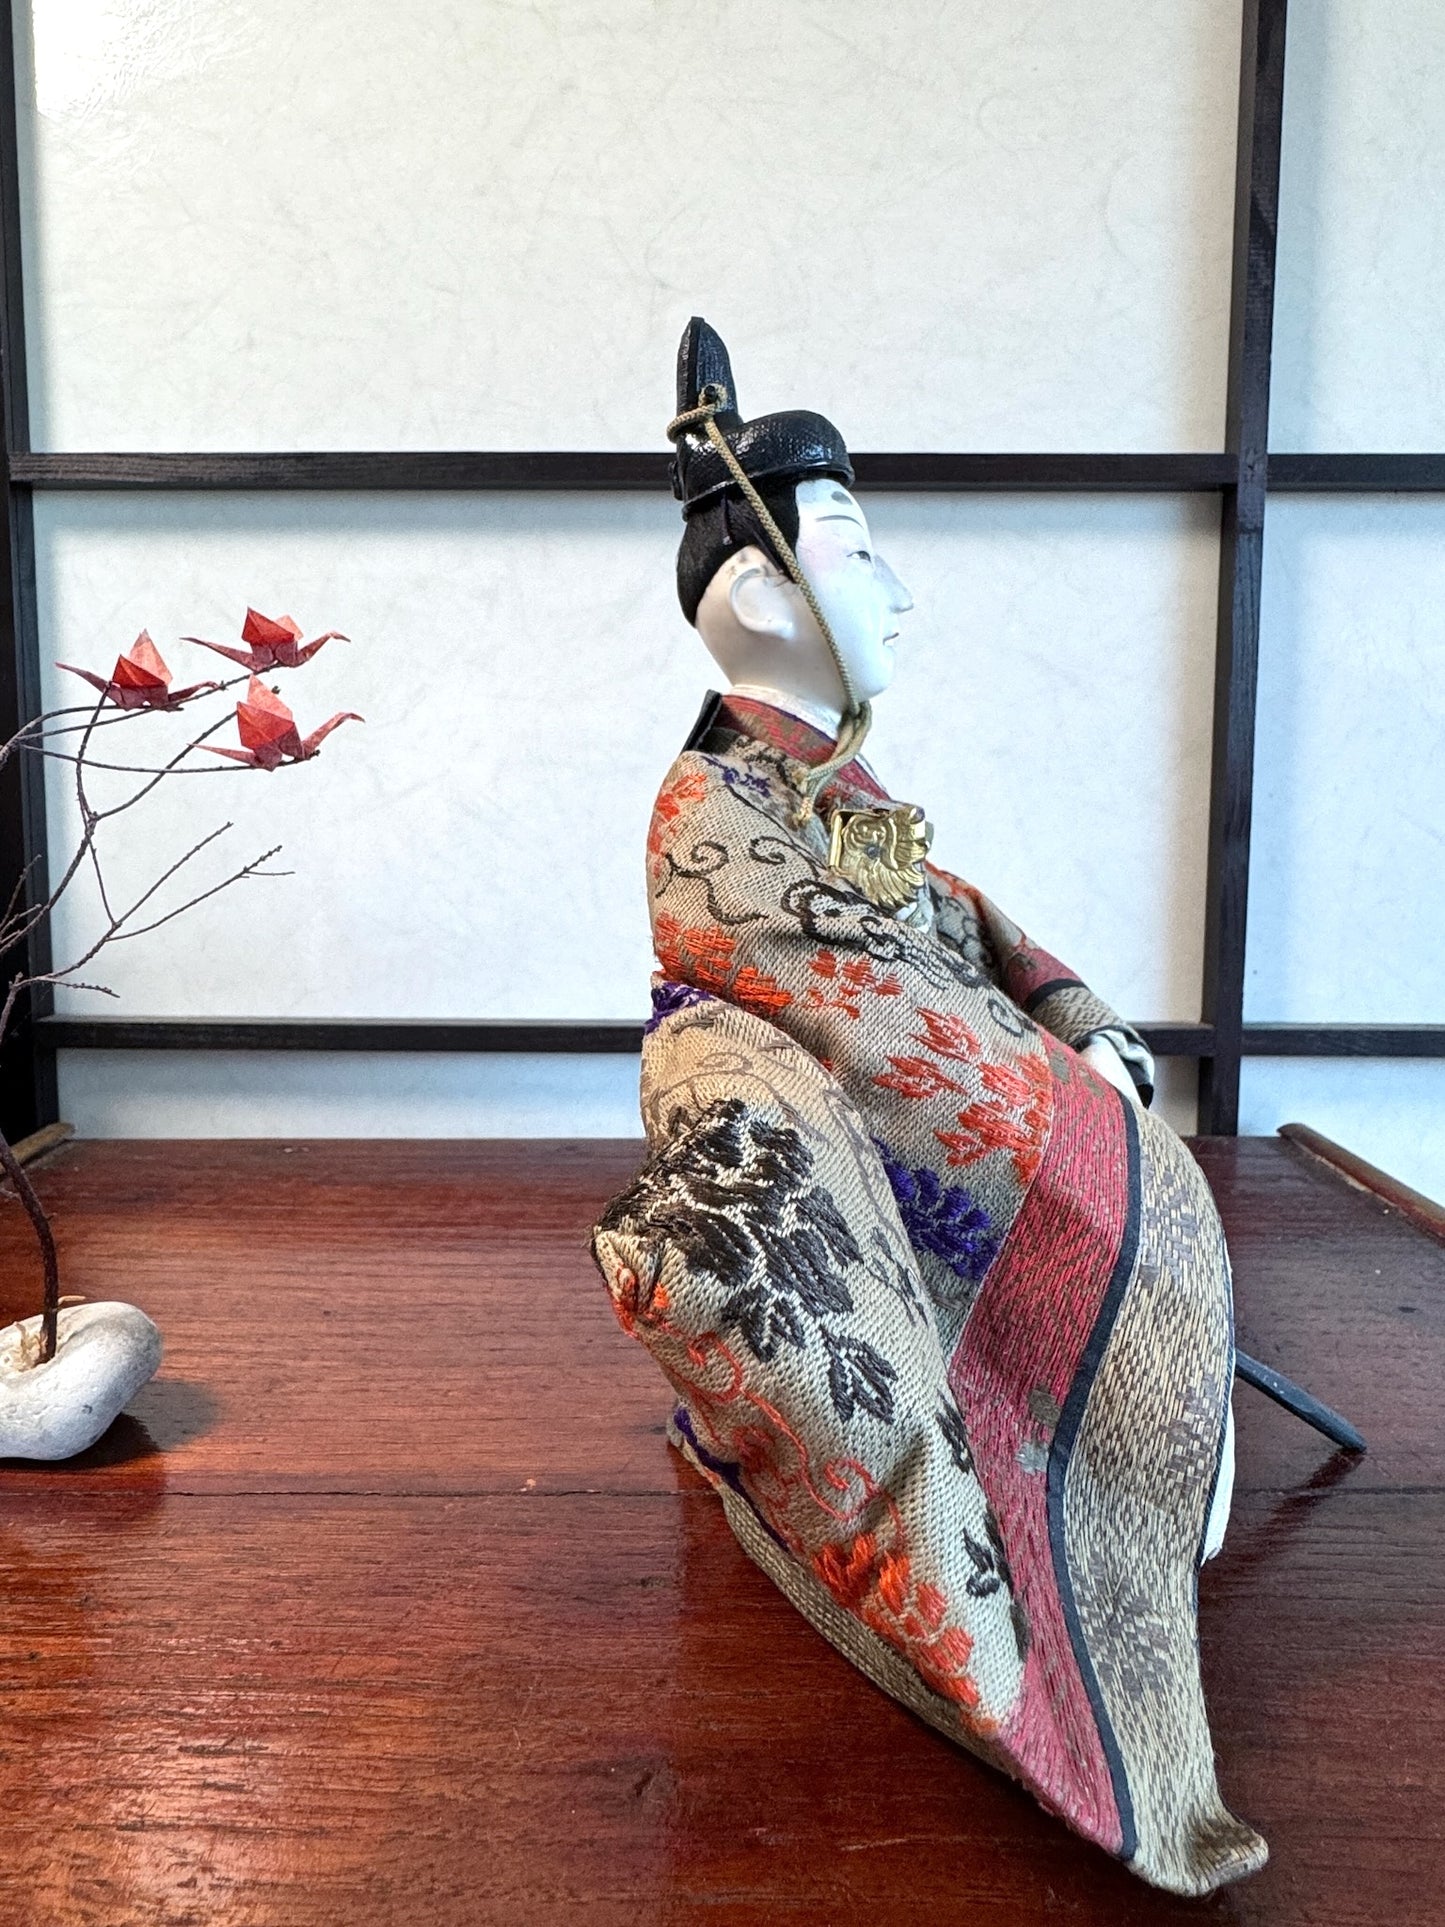 poupée japonaise traditionnelle samourai seigneur, profi droit